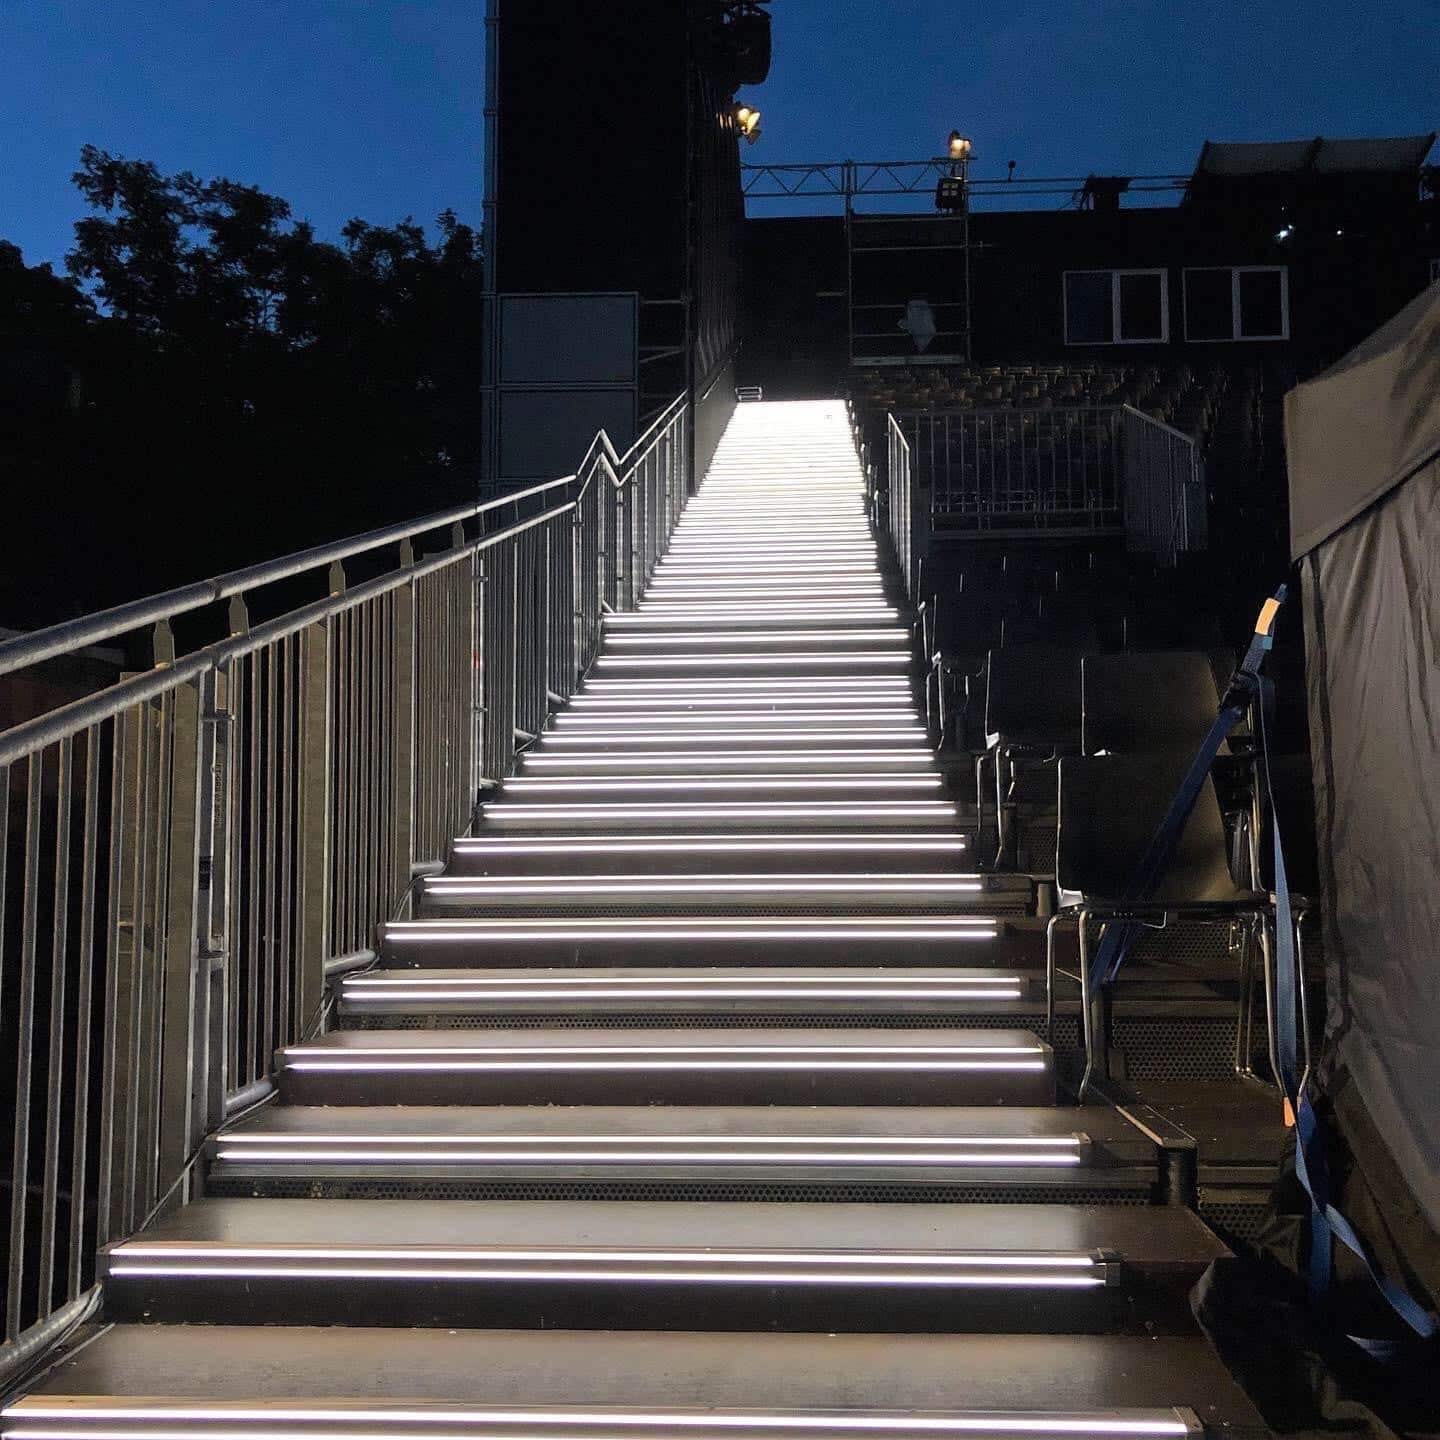 Stufenbeleuchtung einer Tribüne mit weiß beleuchteten Treppenstufen